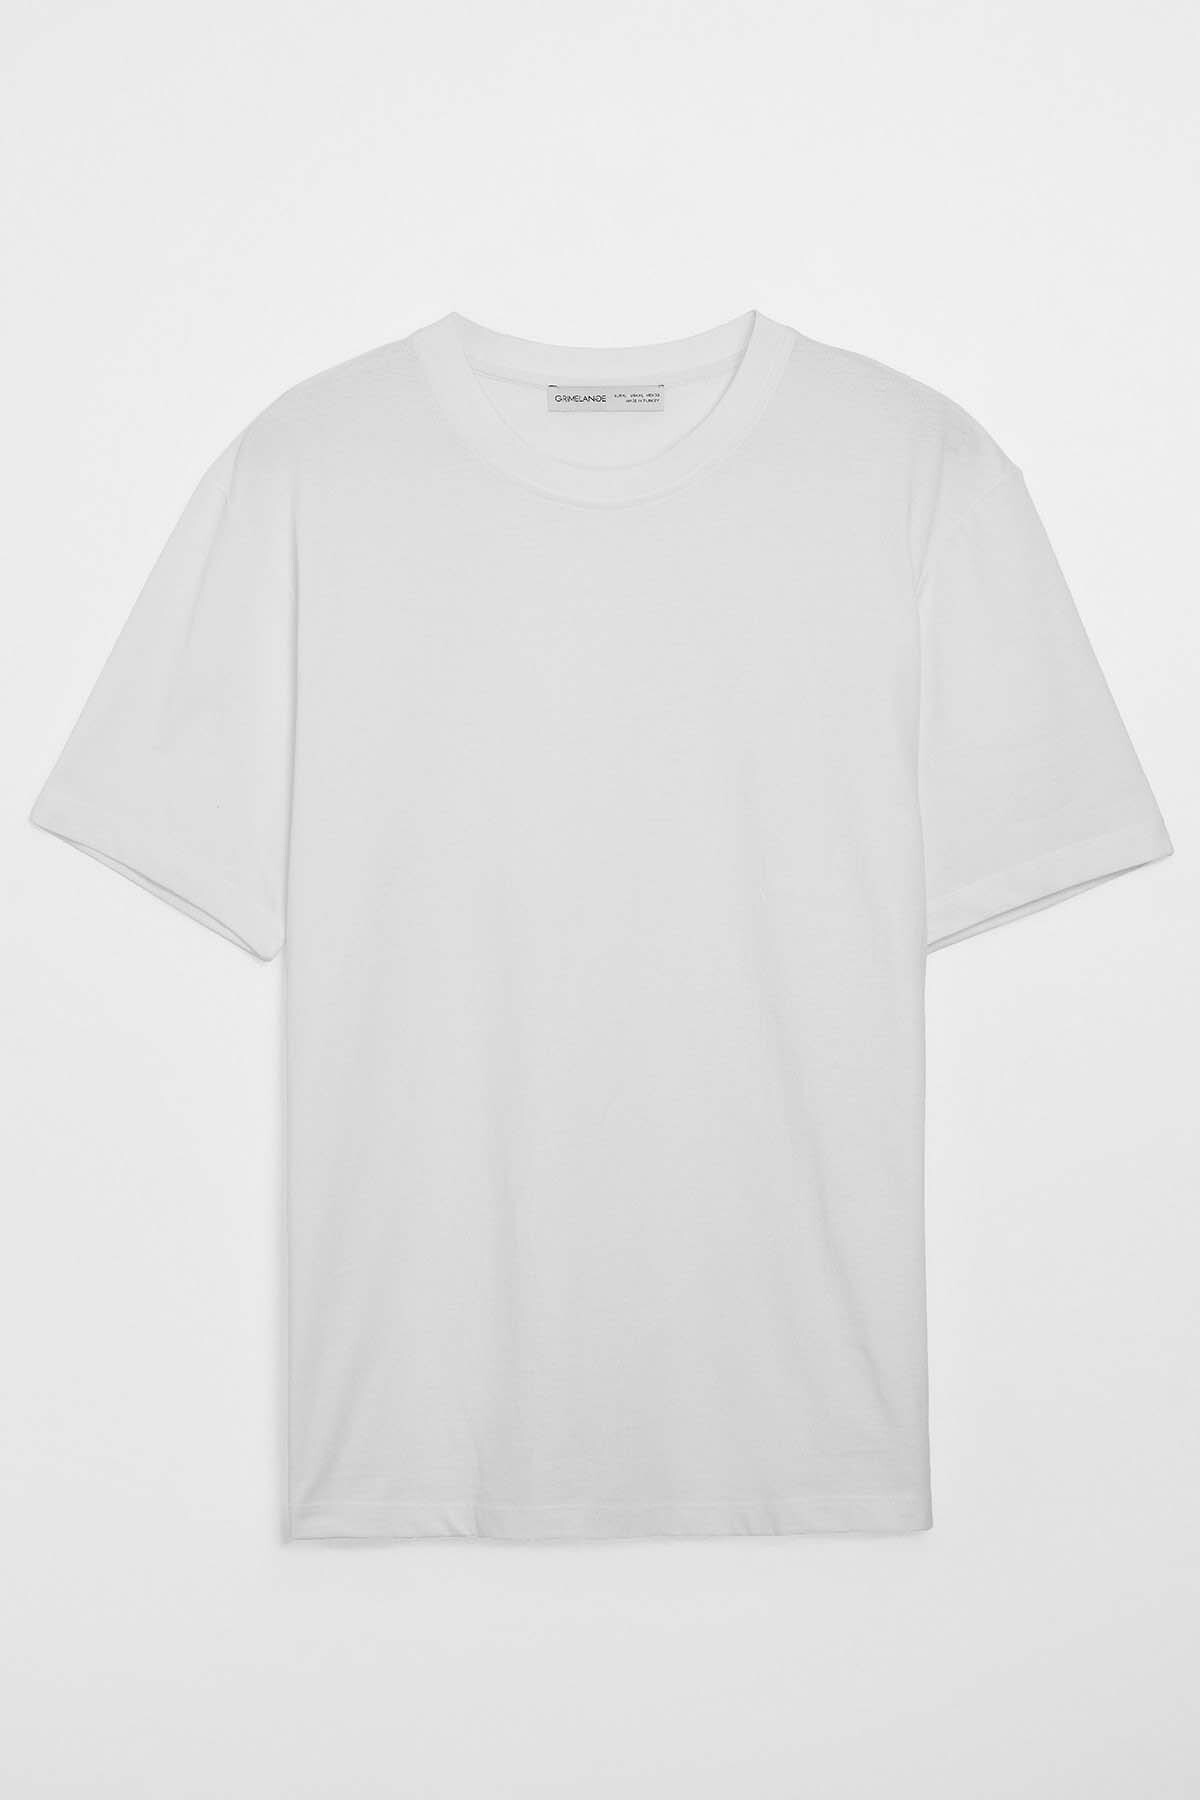 Levně GRIMELANGE Men's Solo Comfort Fit Thick Textured White T-shirt